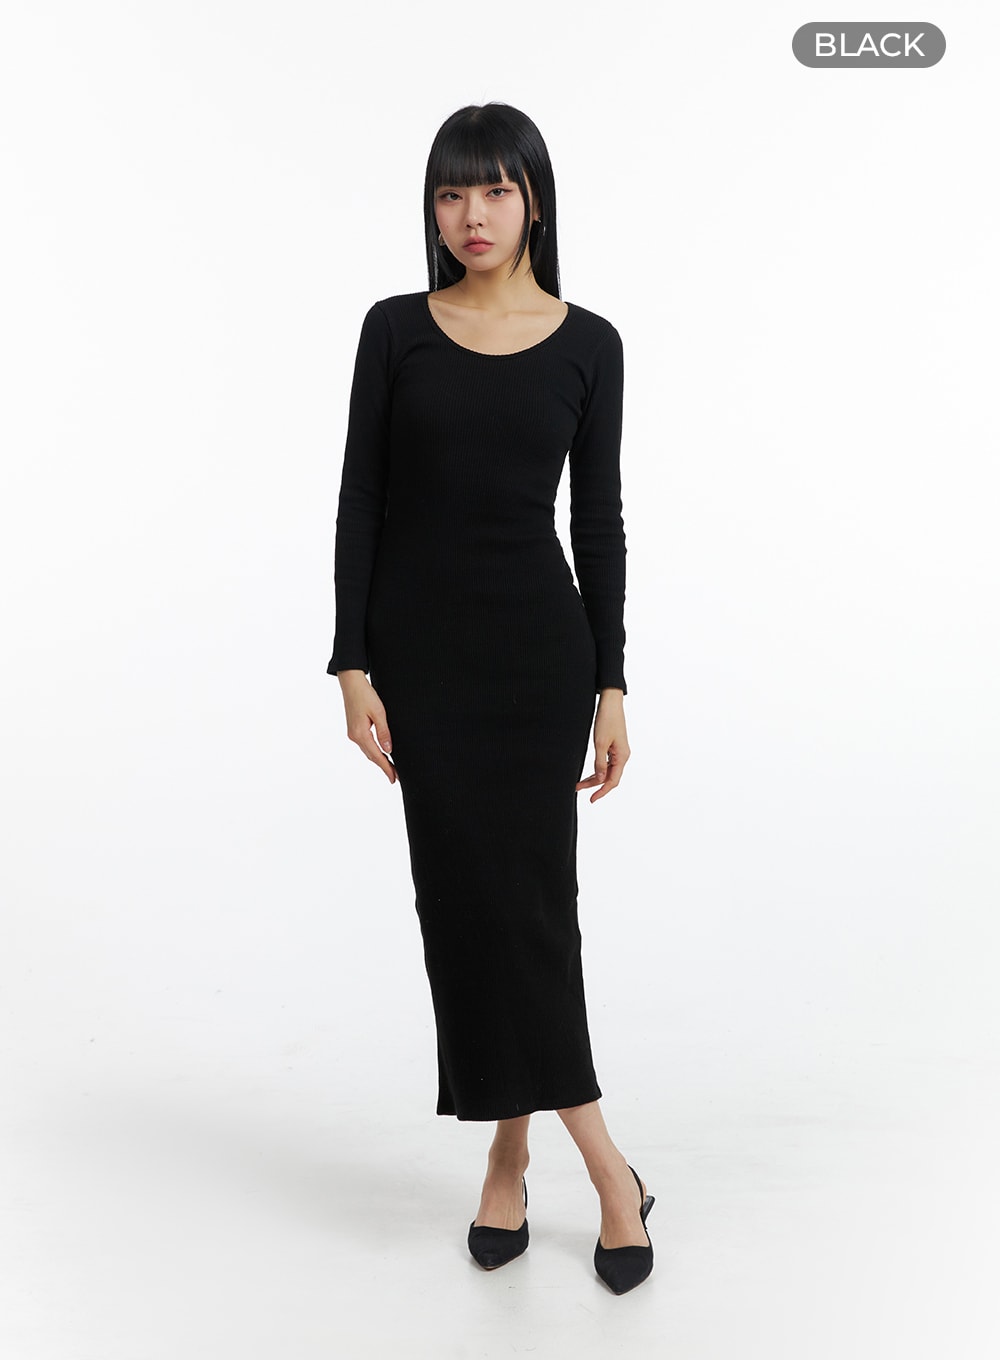 basic-round-neck-long-sleeve-maxi-dress-im414 / Black